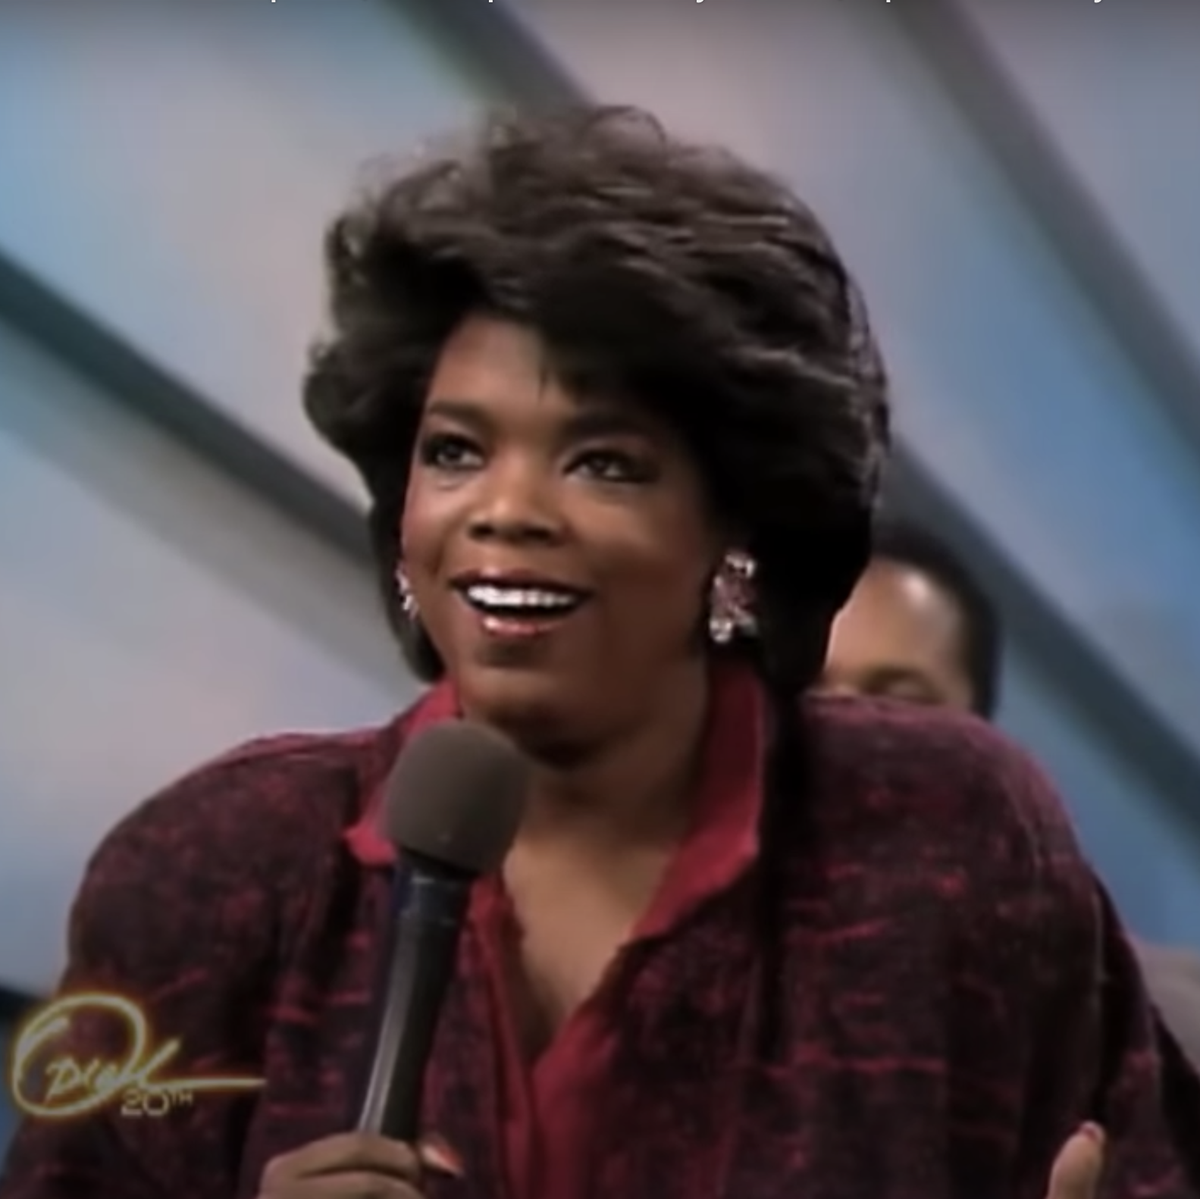 the oprah winfrey show